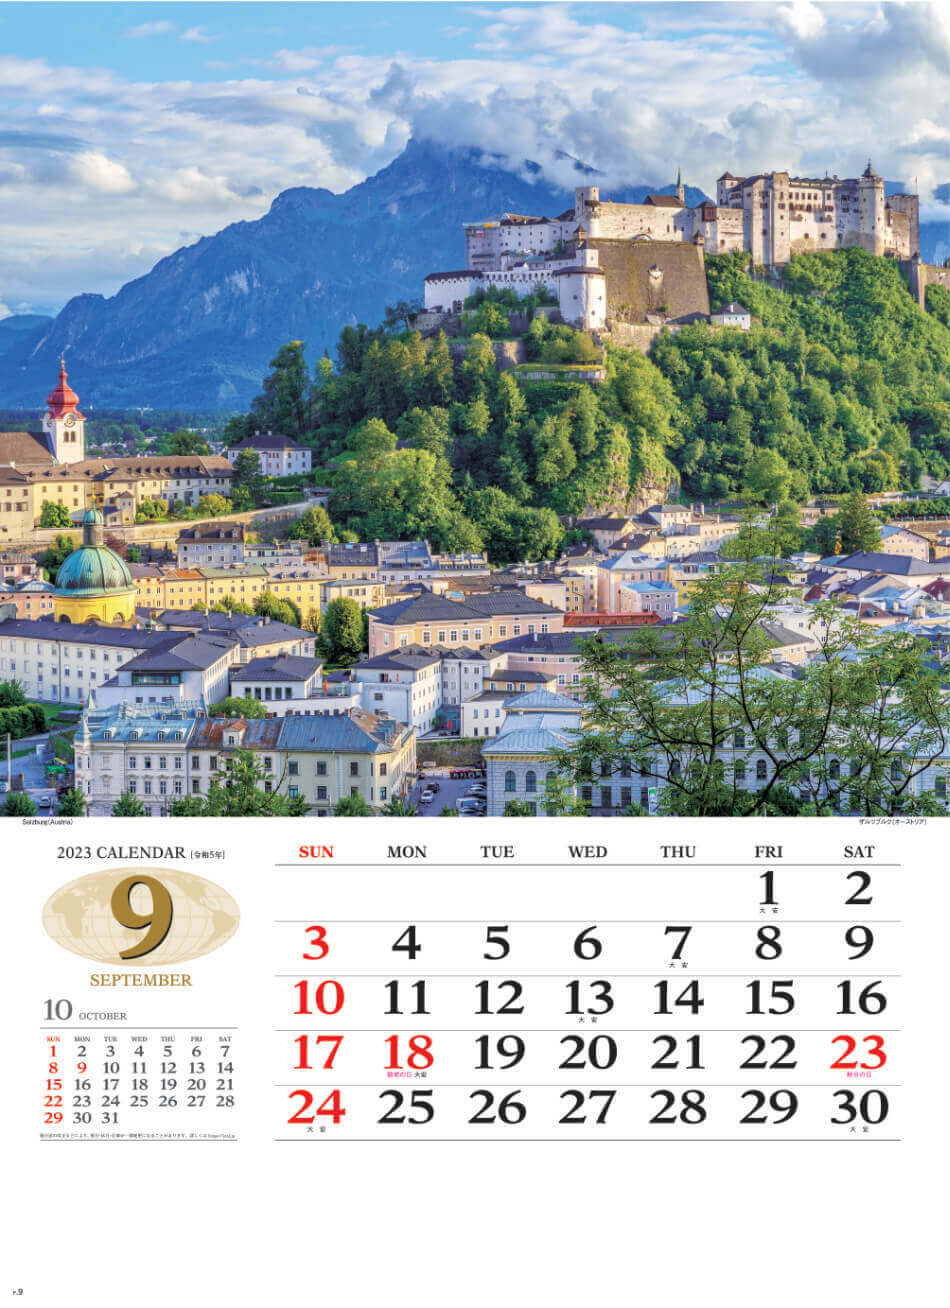 9月 ザルツブルグ(オーストリア) 世界の景観 2023年カレンダーの画像